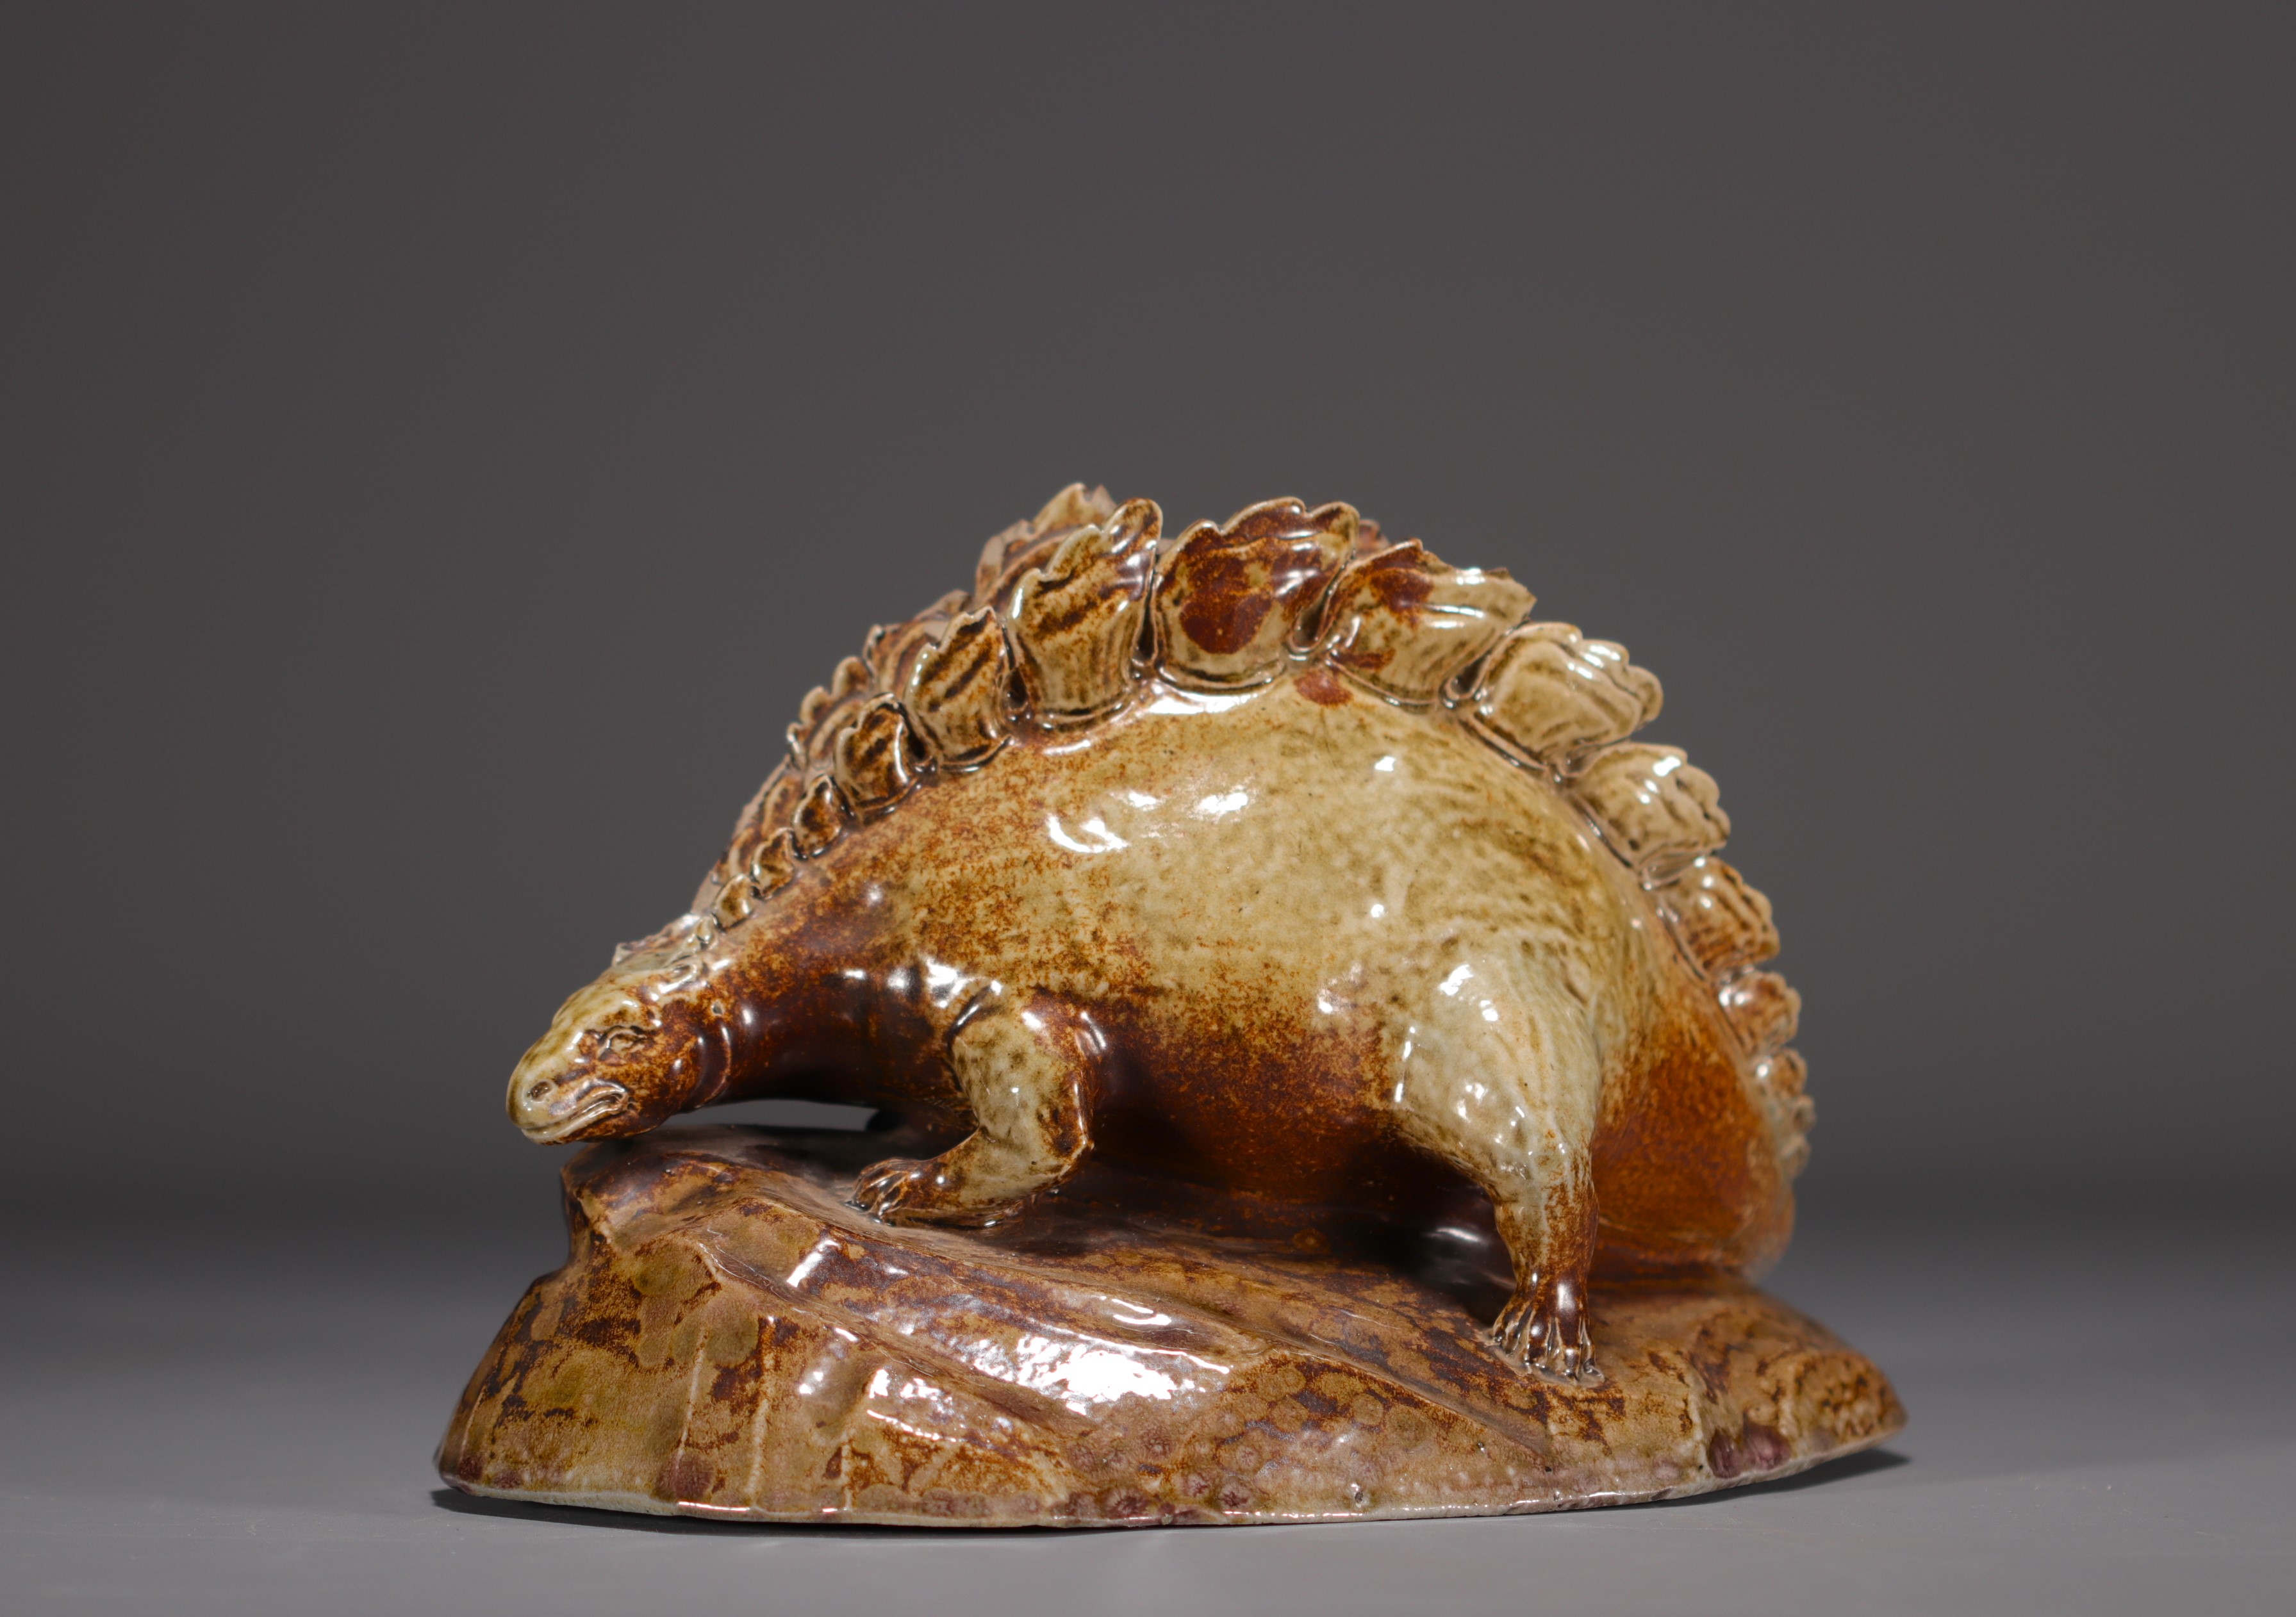 K. FACHSCHULE "Dinosaur" Sculpture in glazed stoneware. - Image 2 of 6